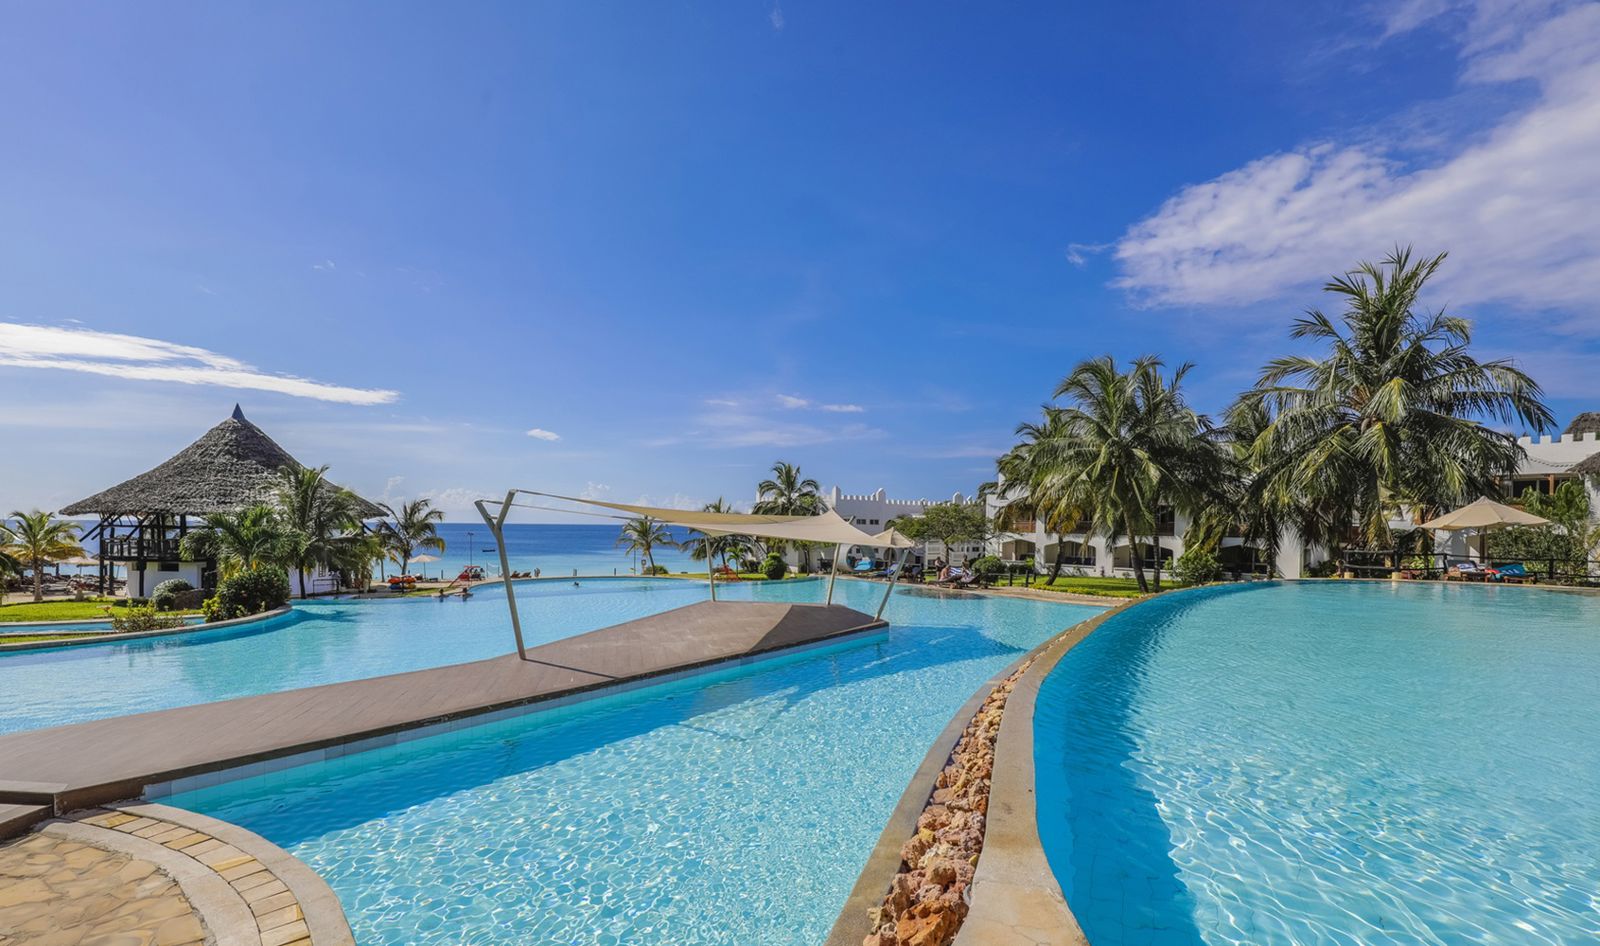 Corendon Royal Zanzibar Beach Resort - Tanzania - Zanzibar - Nungwi